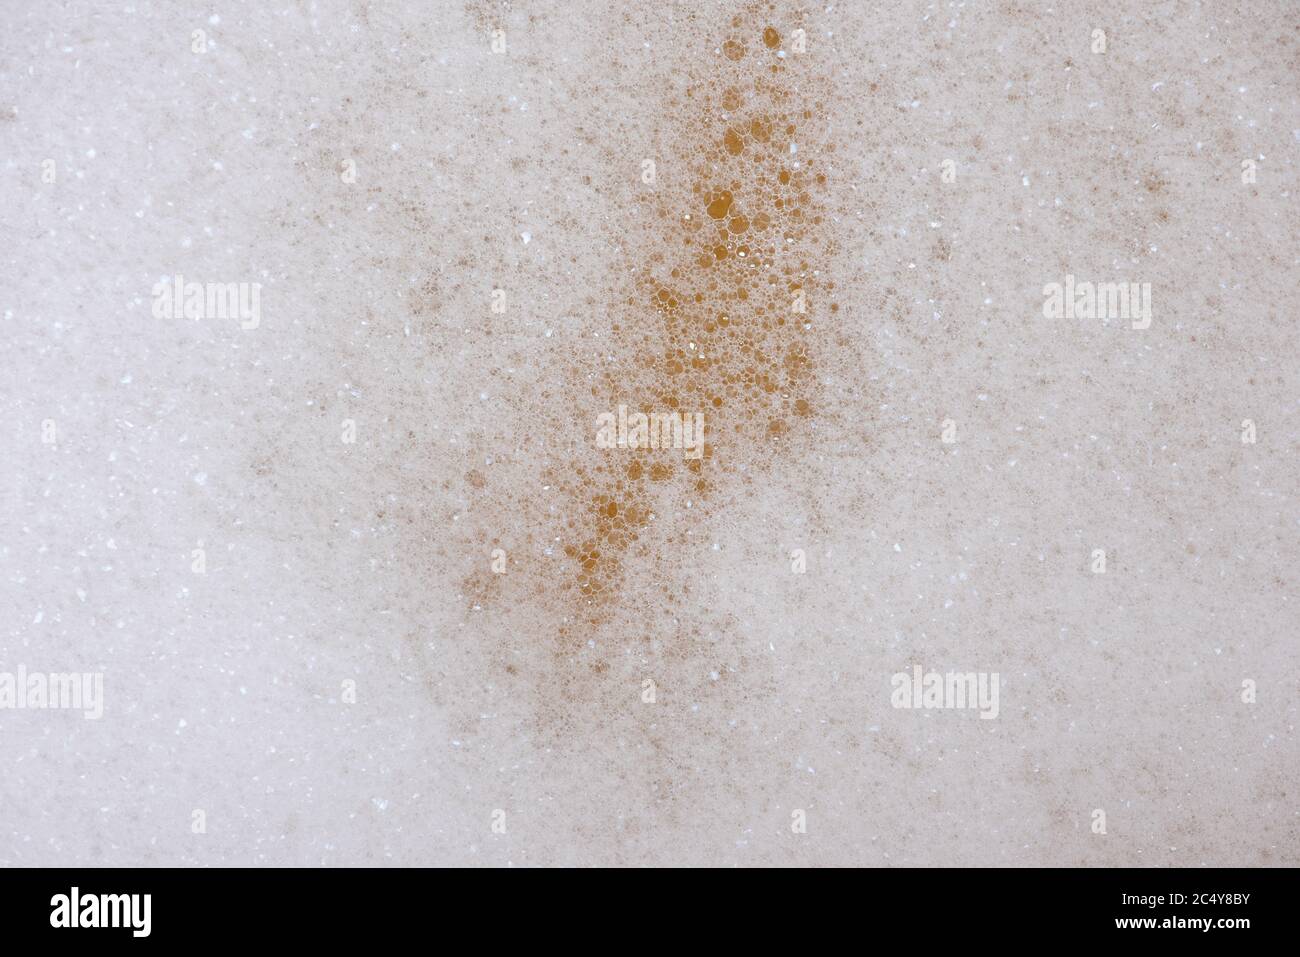 Primo piano di una schiuma bianca con piccole bolle Foto Stock